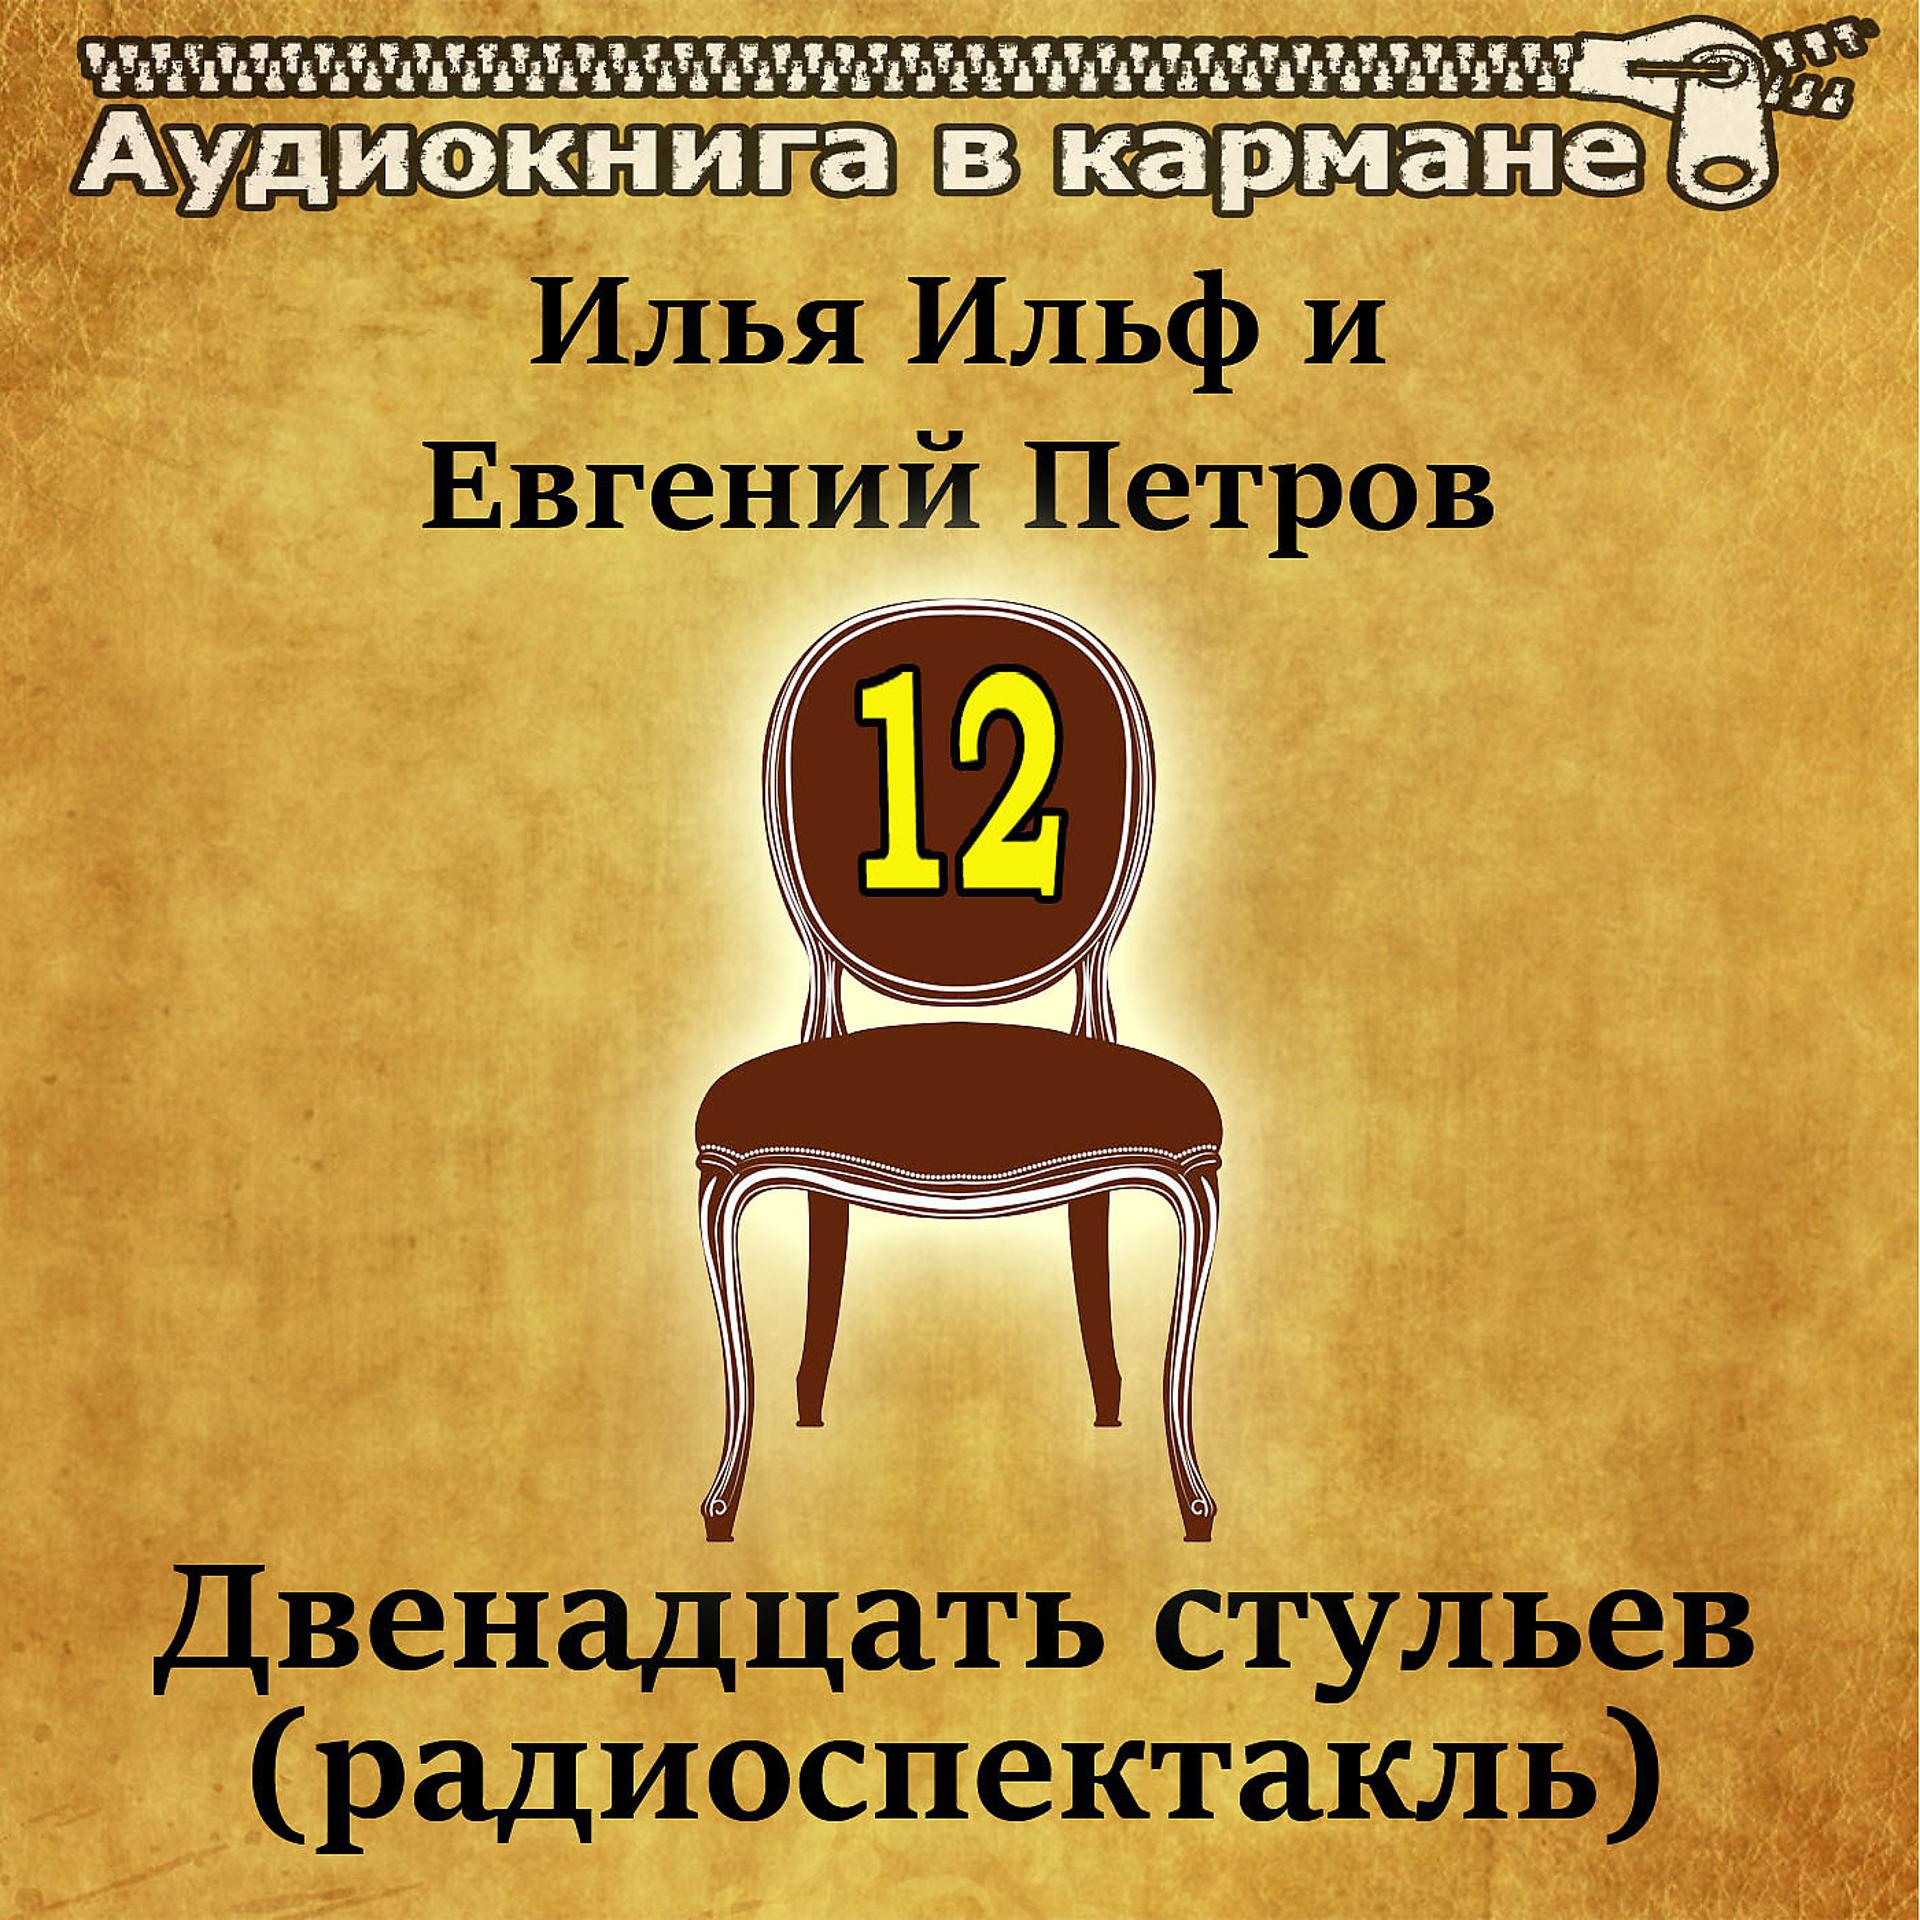 Постер к треку Аудиокнига в кармане, Евгений Весник - Двенадцать стульев, Чт. 6